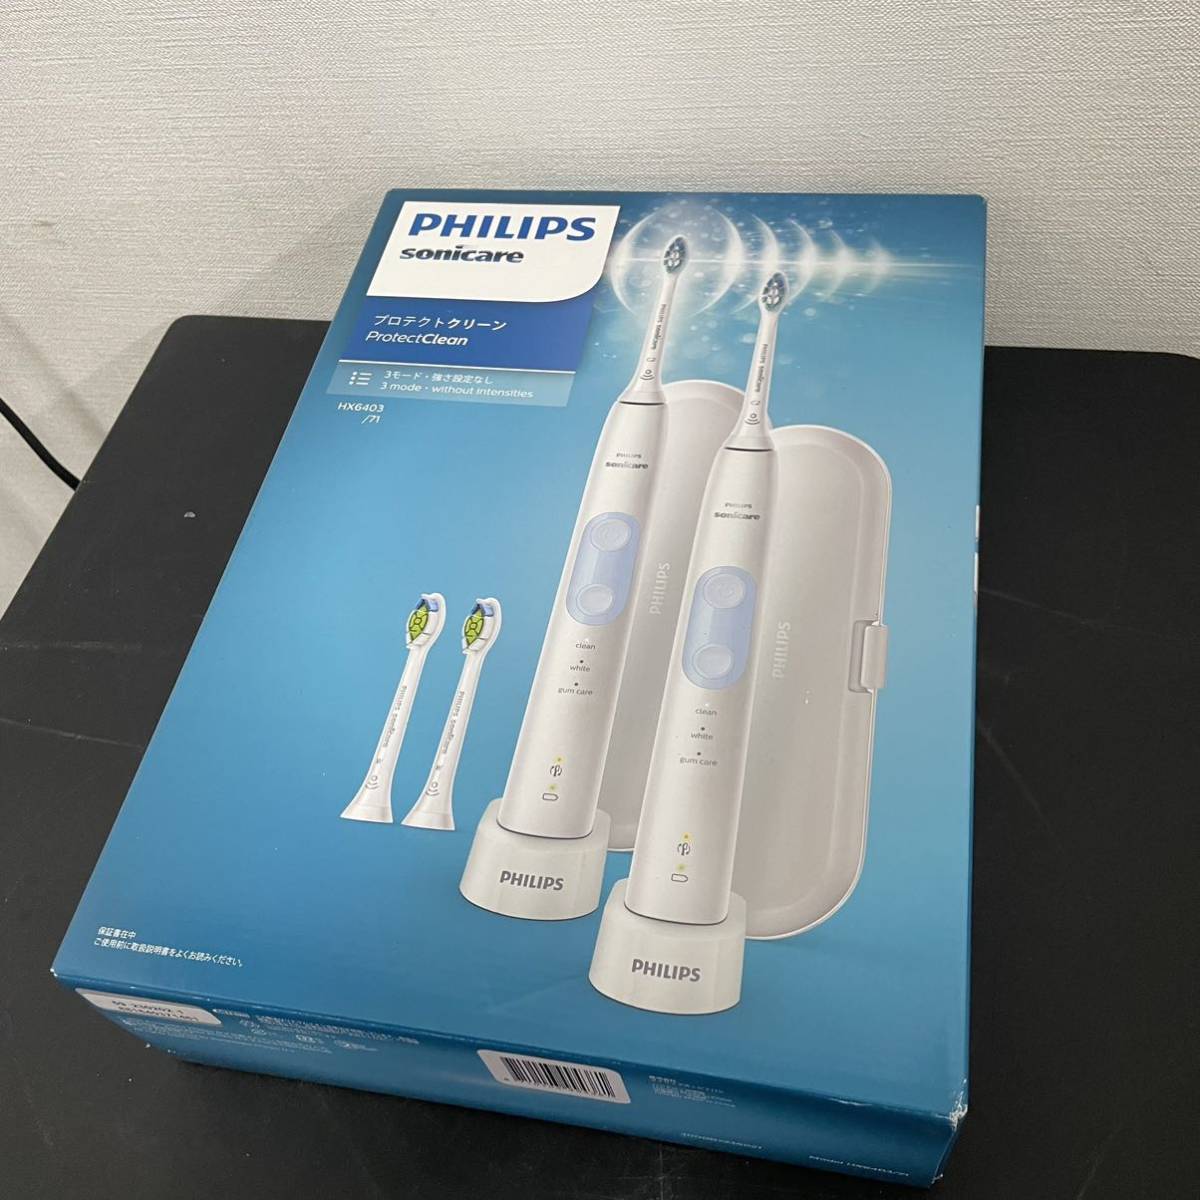 未使用 PHILIPS フィリップス 電動歯ブラシ ソニッケアー プロテクトクリーン HX6403/71 2021 佐川100